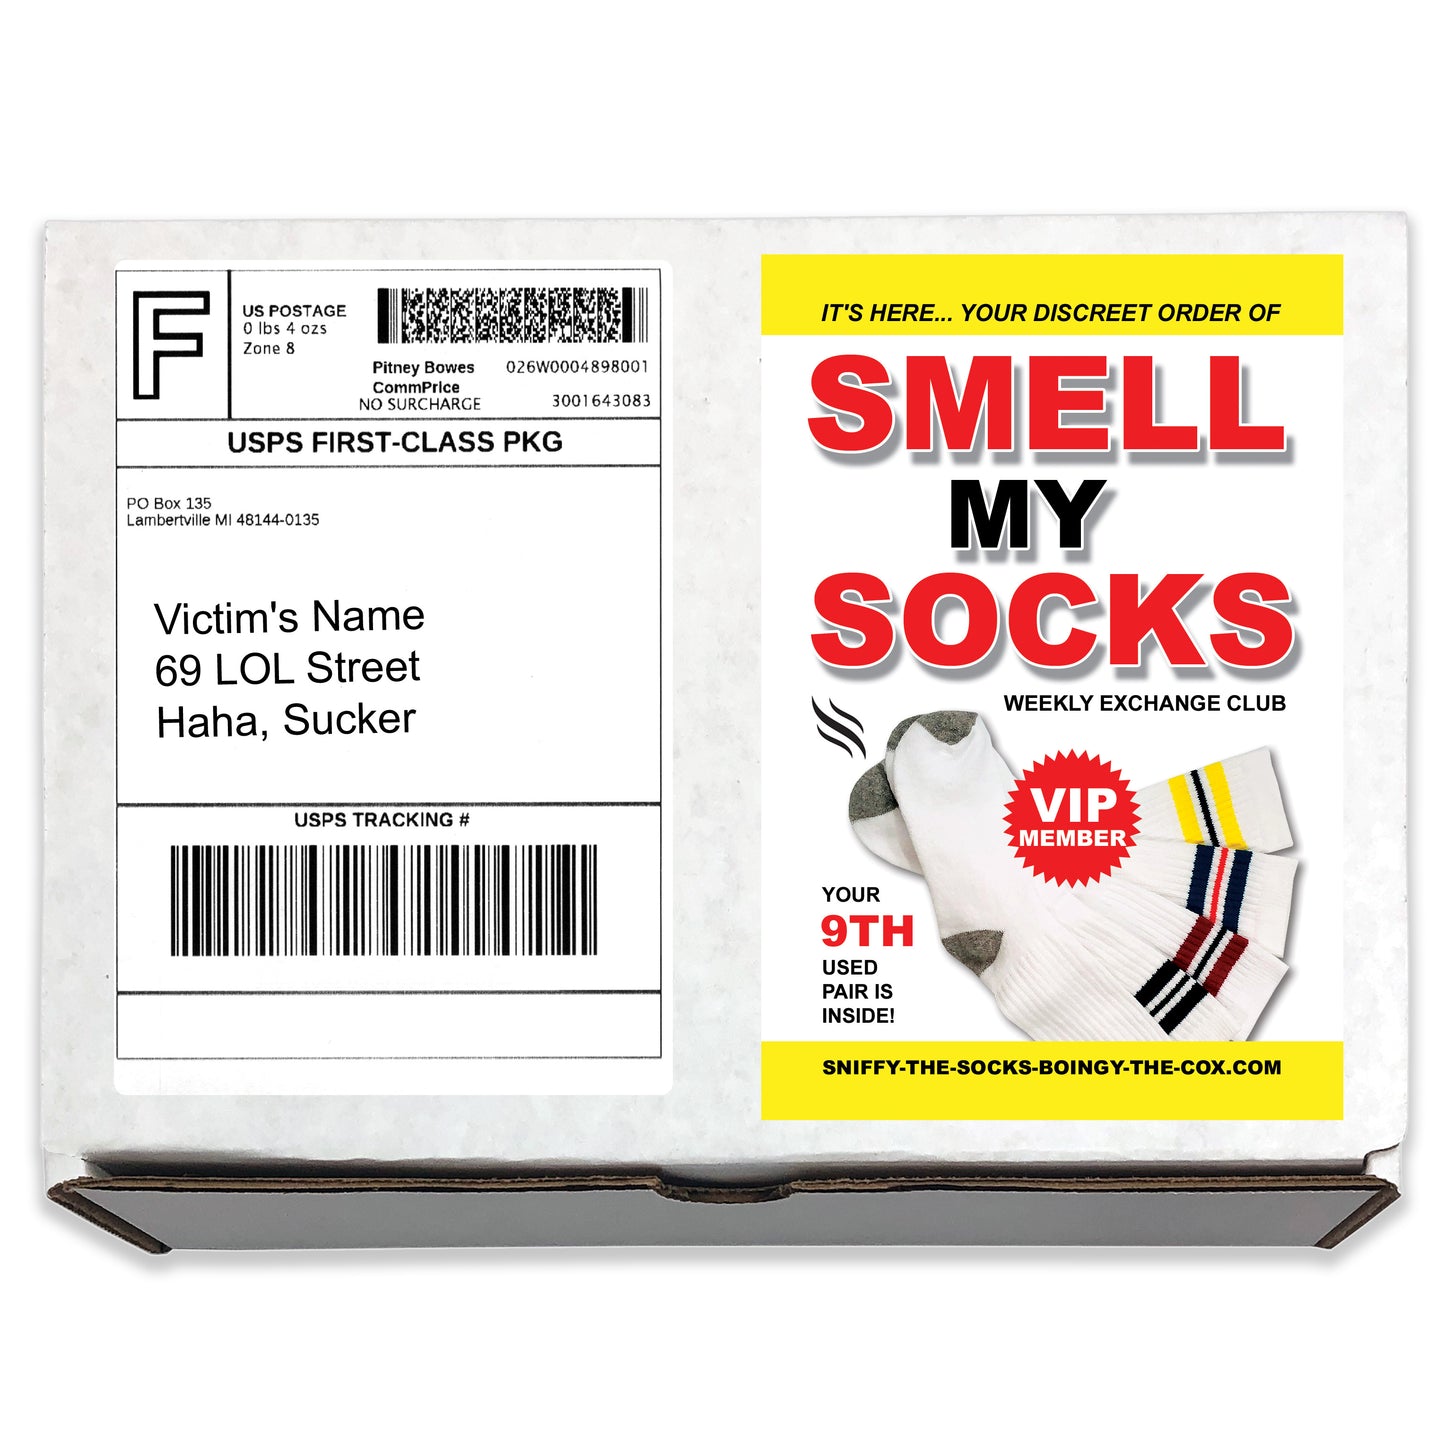 Smell My Socks Prank Mail